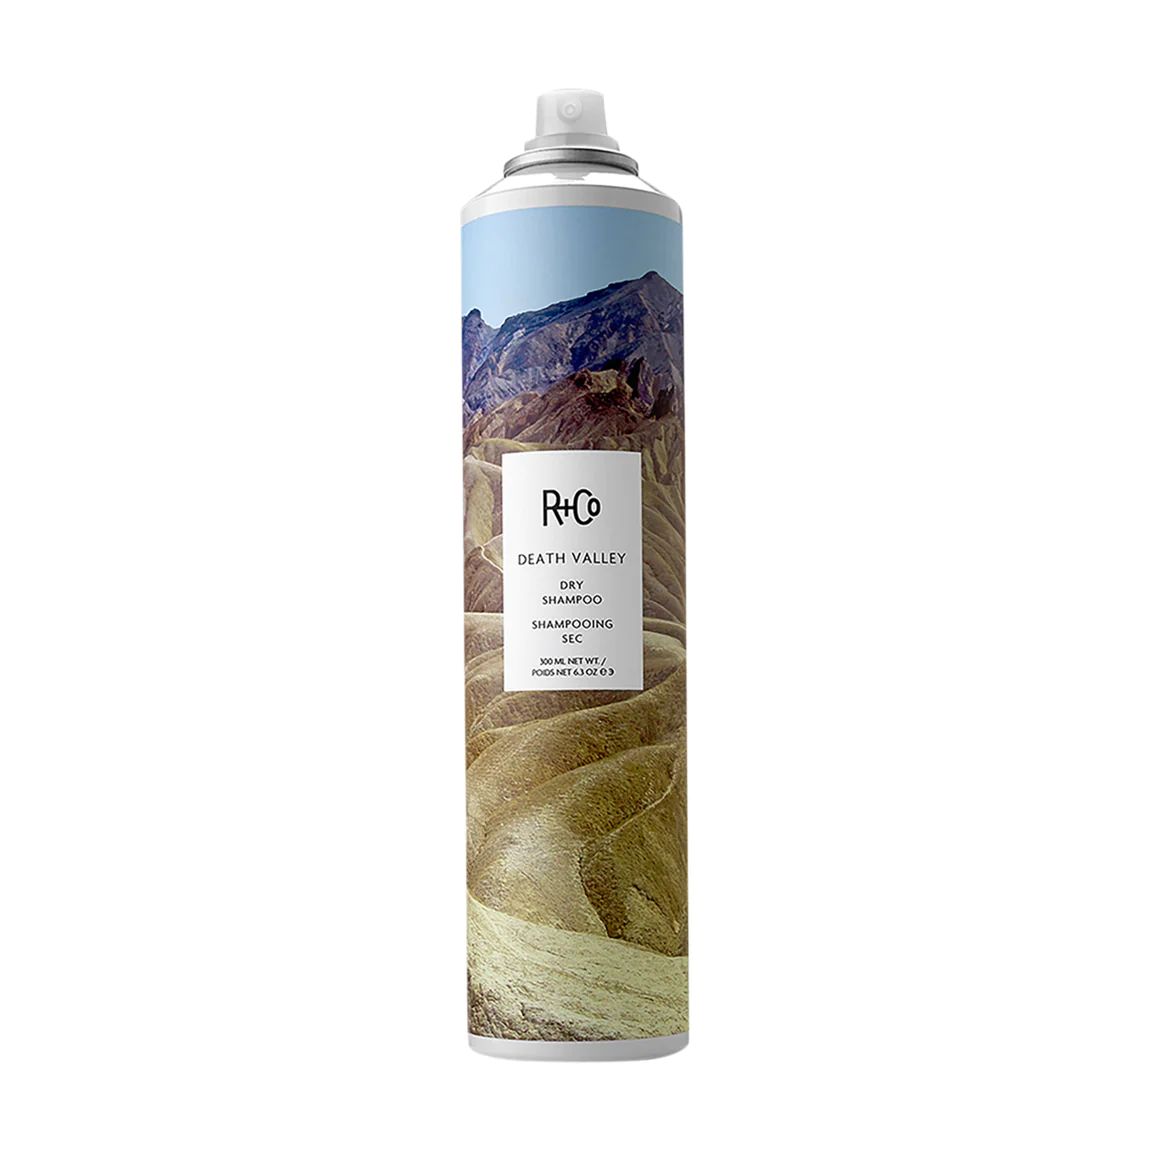 Death Valley Dry Shampoo | Bluemercury, Inc.